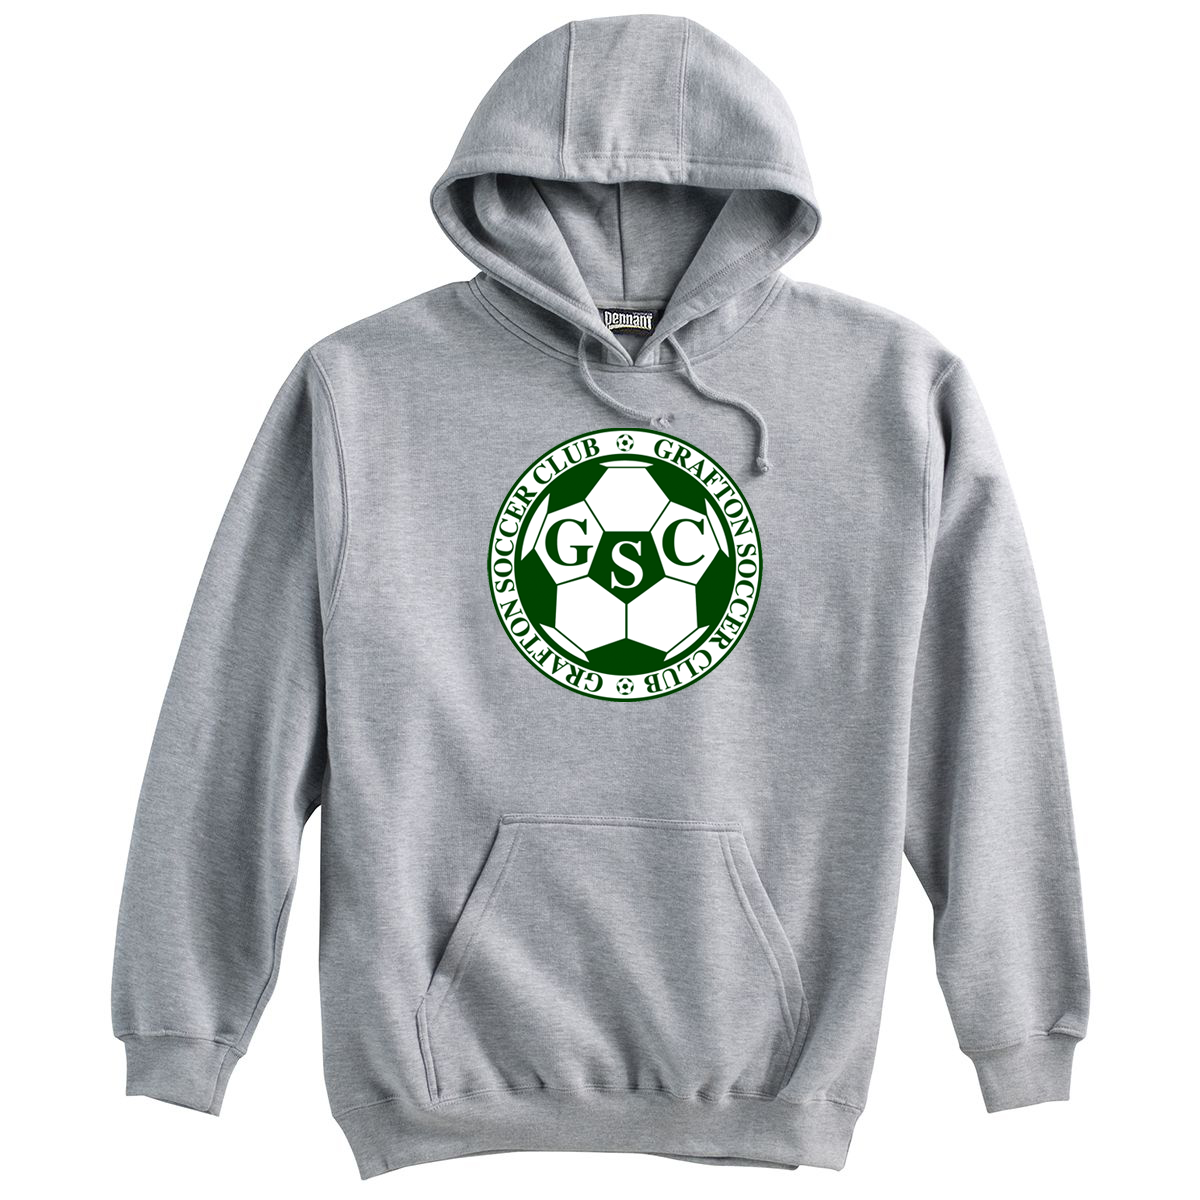 Grafton Youth Soccer Club Sweatshirt